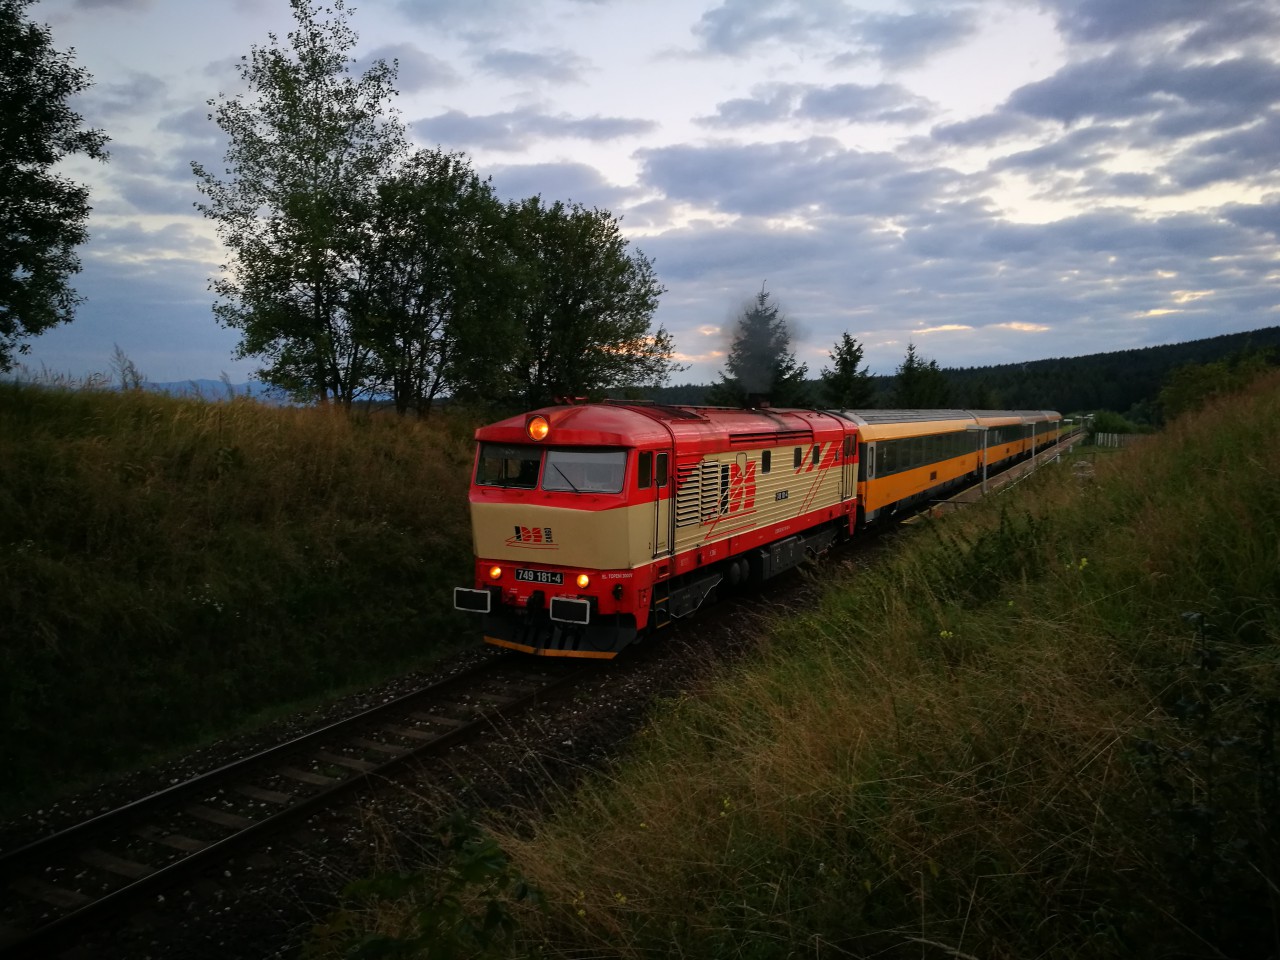 749 181,RJ1008,Horn tuba-Obec,16.8.2016